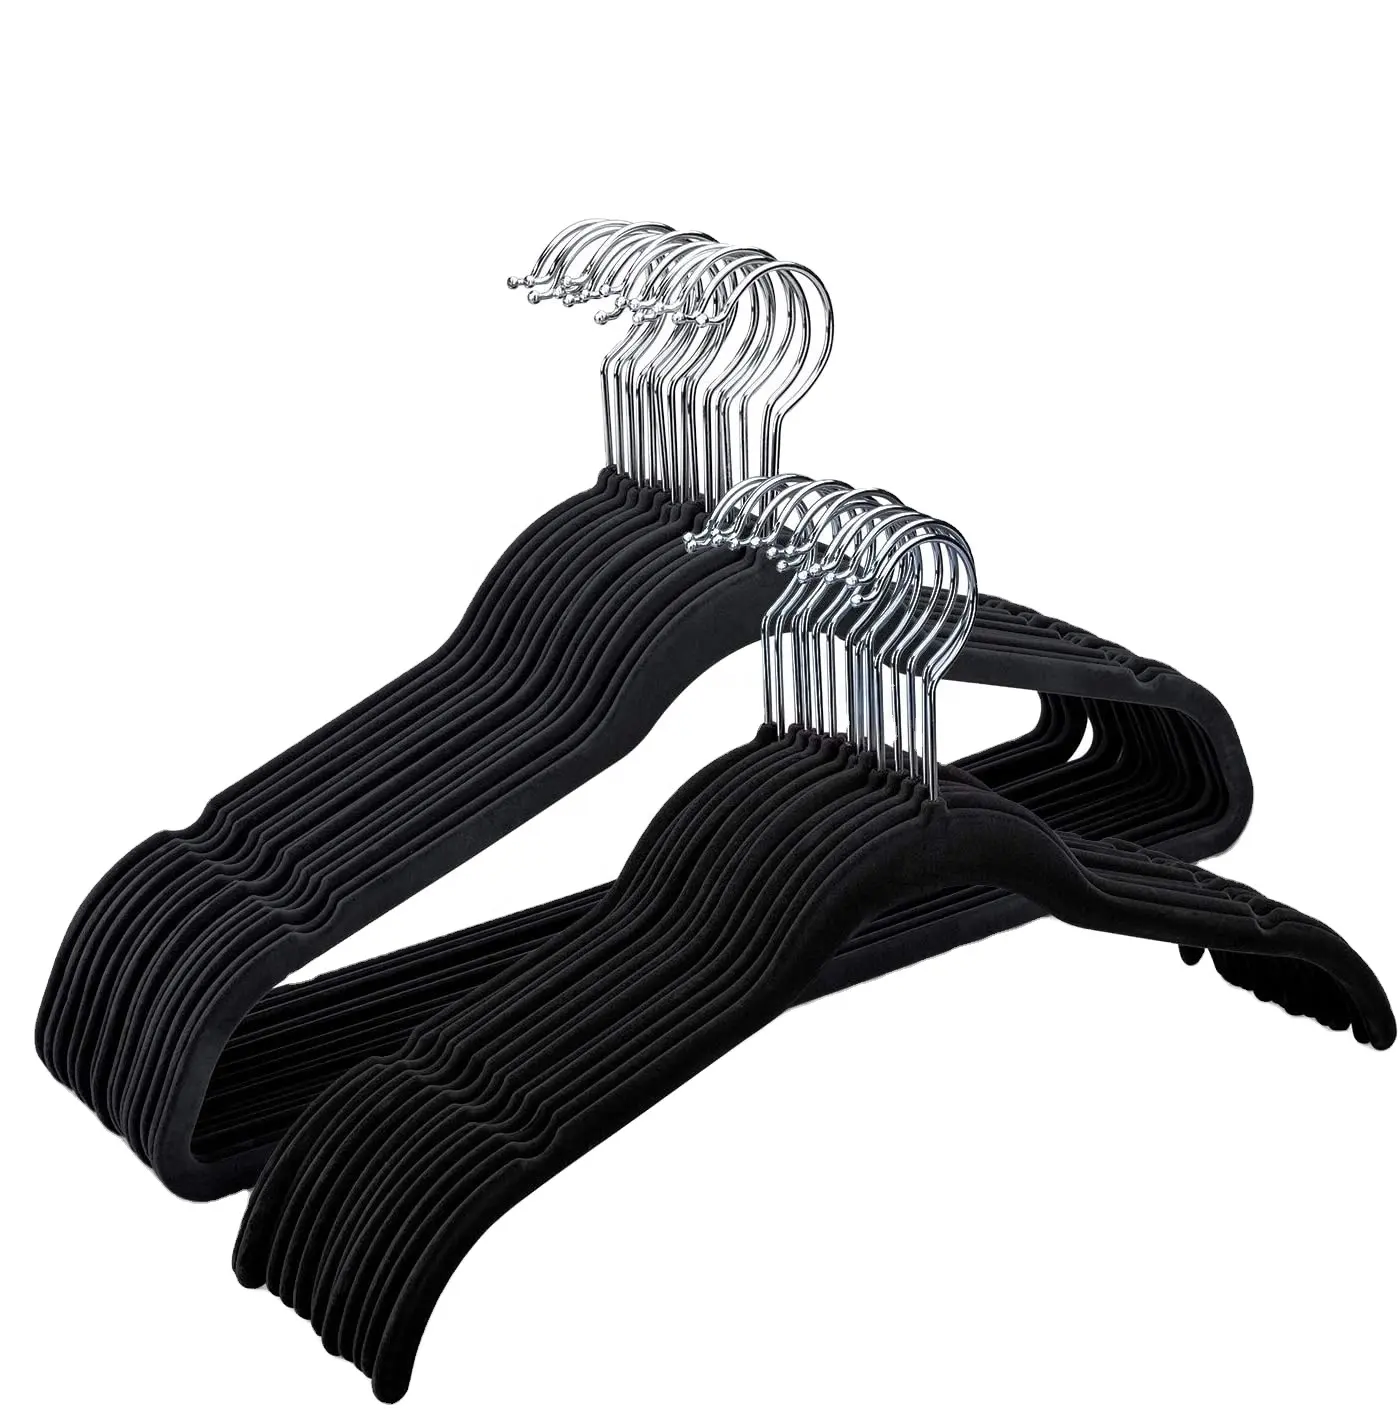 Perchas abiertas de terciopelo de diseño moderno, antideslizantes, color negro claro, de lujo